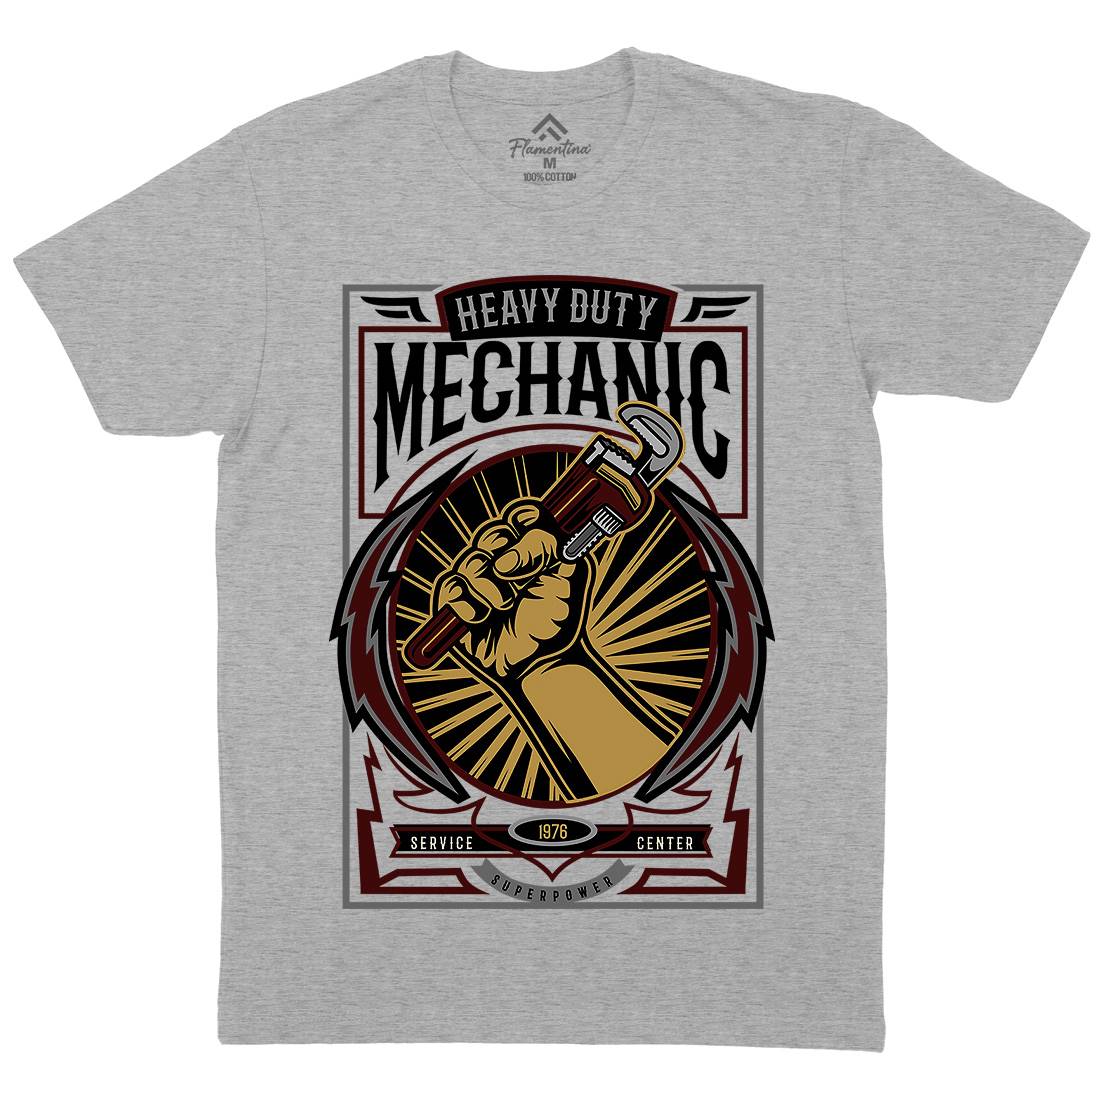 Mechanic Mens Crew Neck T-Shirt Work D546